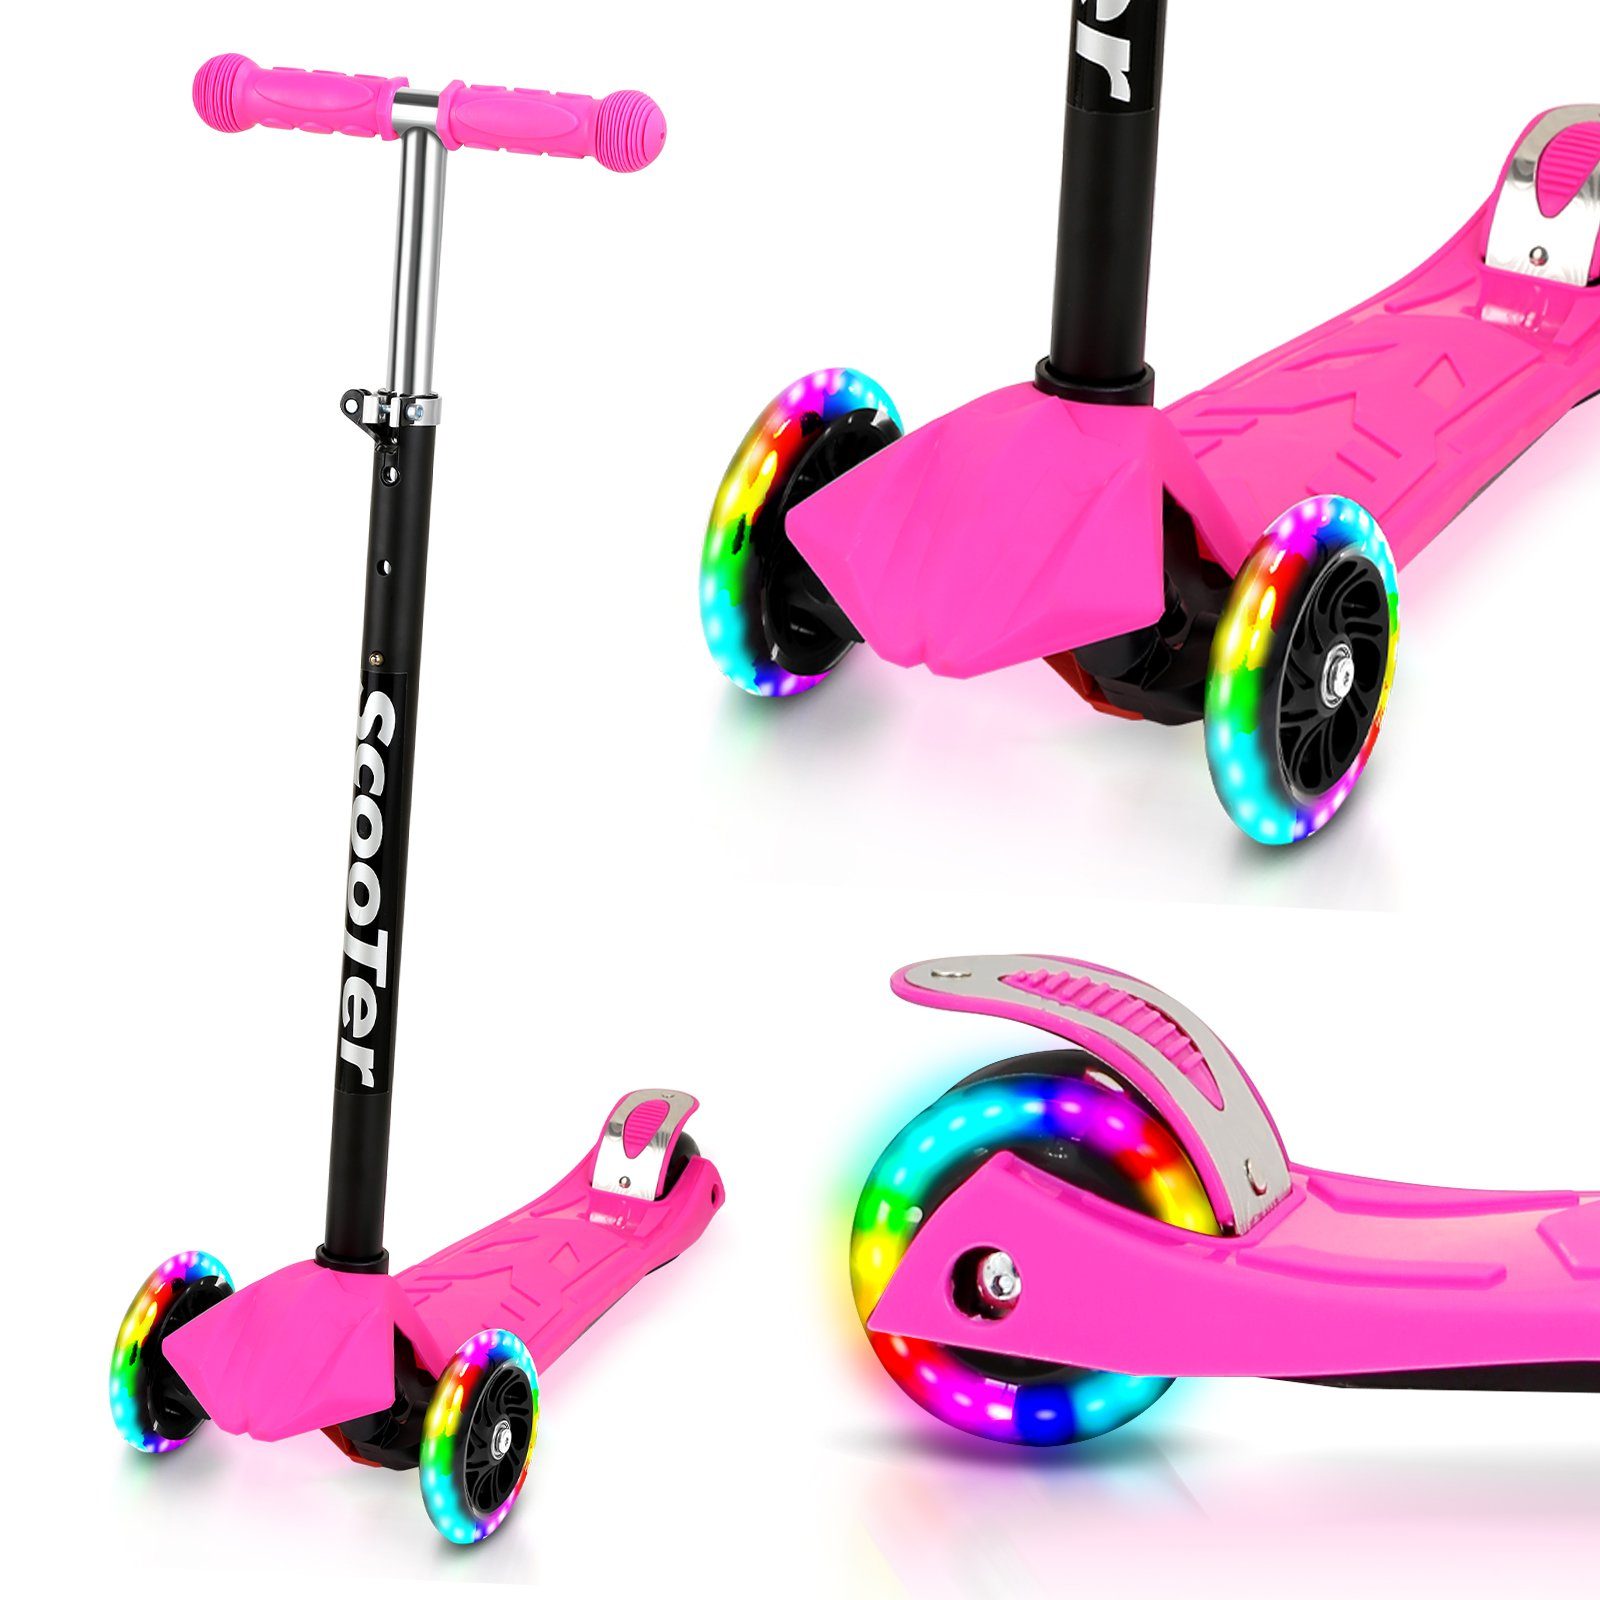 Lospitch Scooter Kinderroller Tretroller LED-Räder bis 50 kg Höhenverstellbar Rosa